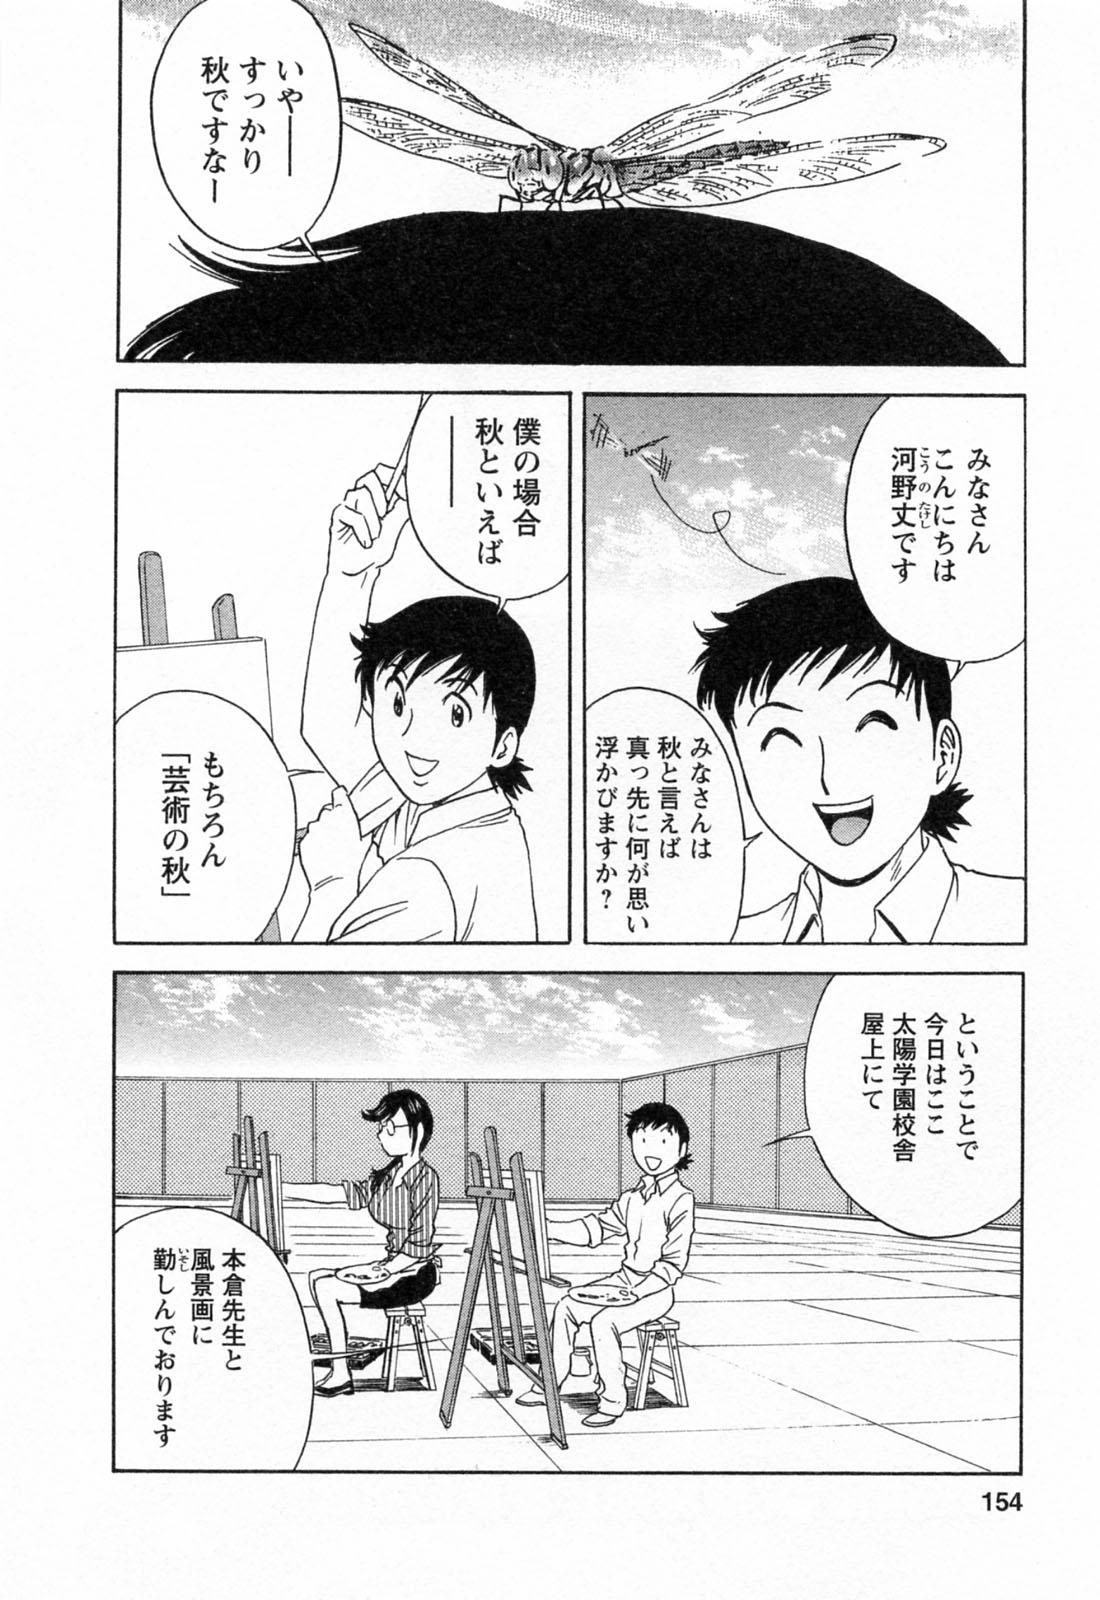 [Hidemaru] Mo-Retsu! Boin Sensei (Boing Boing Teacher) Vol.4 155